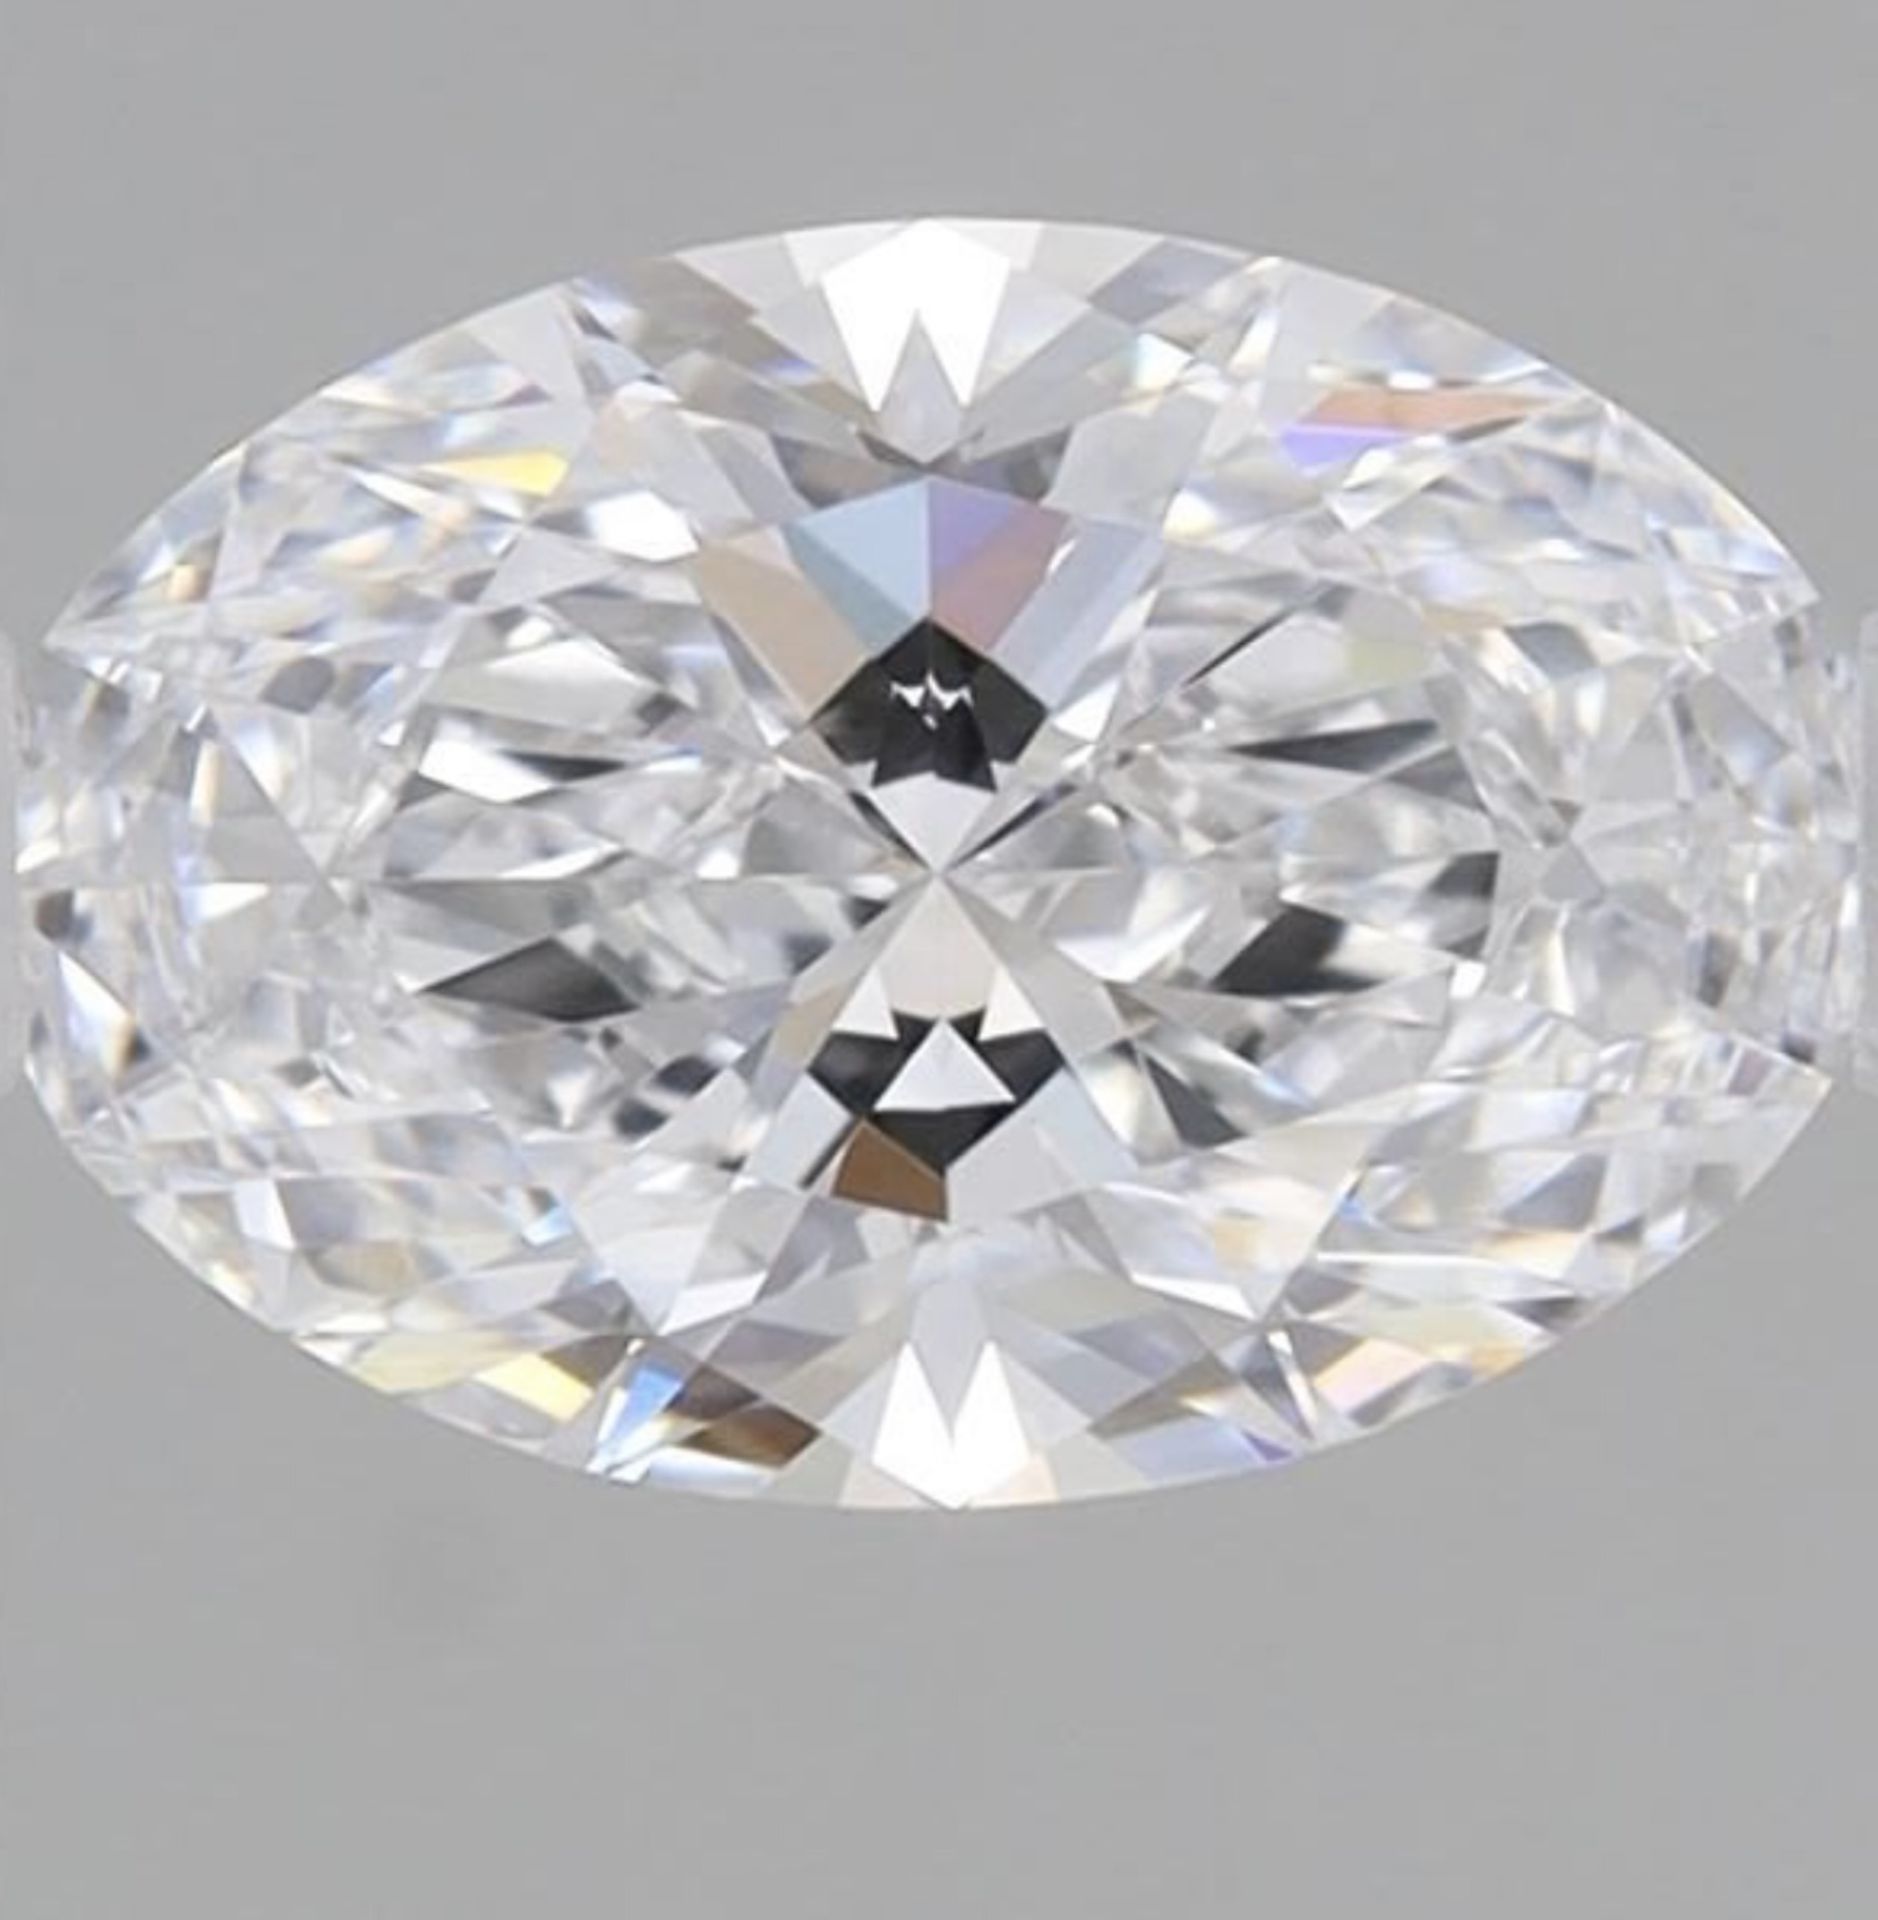 ** ON SALE ** Single -IGI Oval Cut Diamond E Colour VVS2 Clarity 1.04 Carat - LG574338065